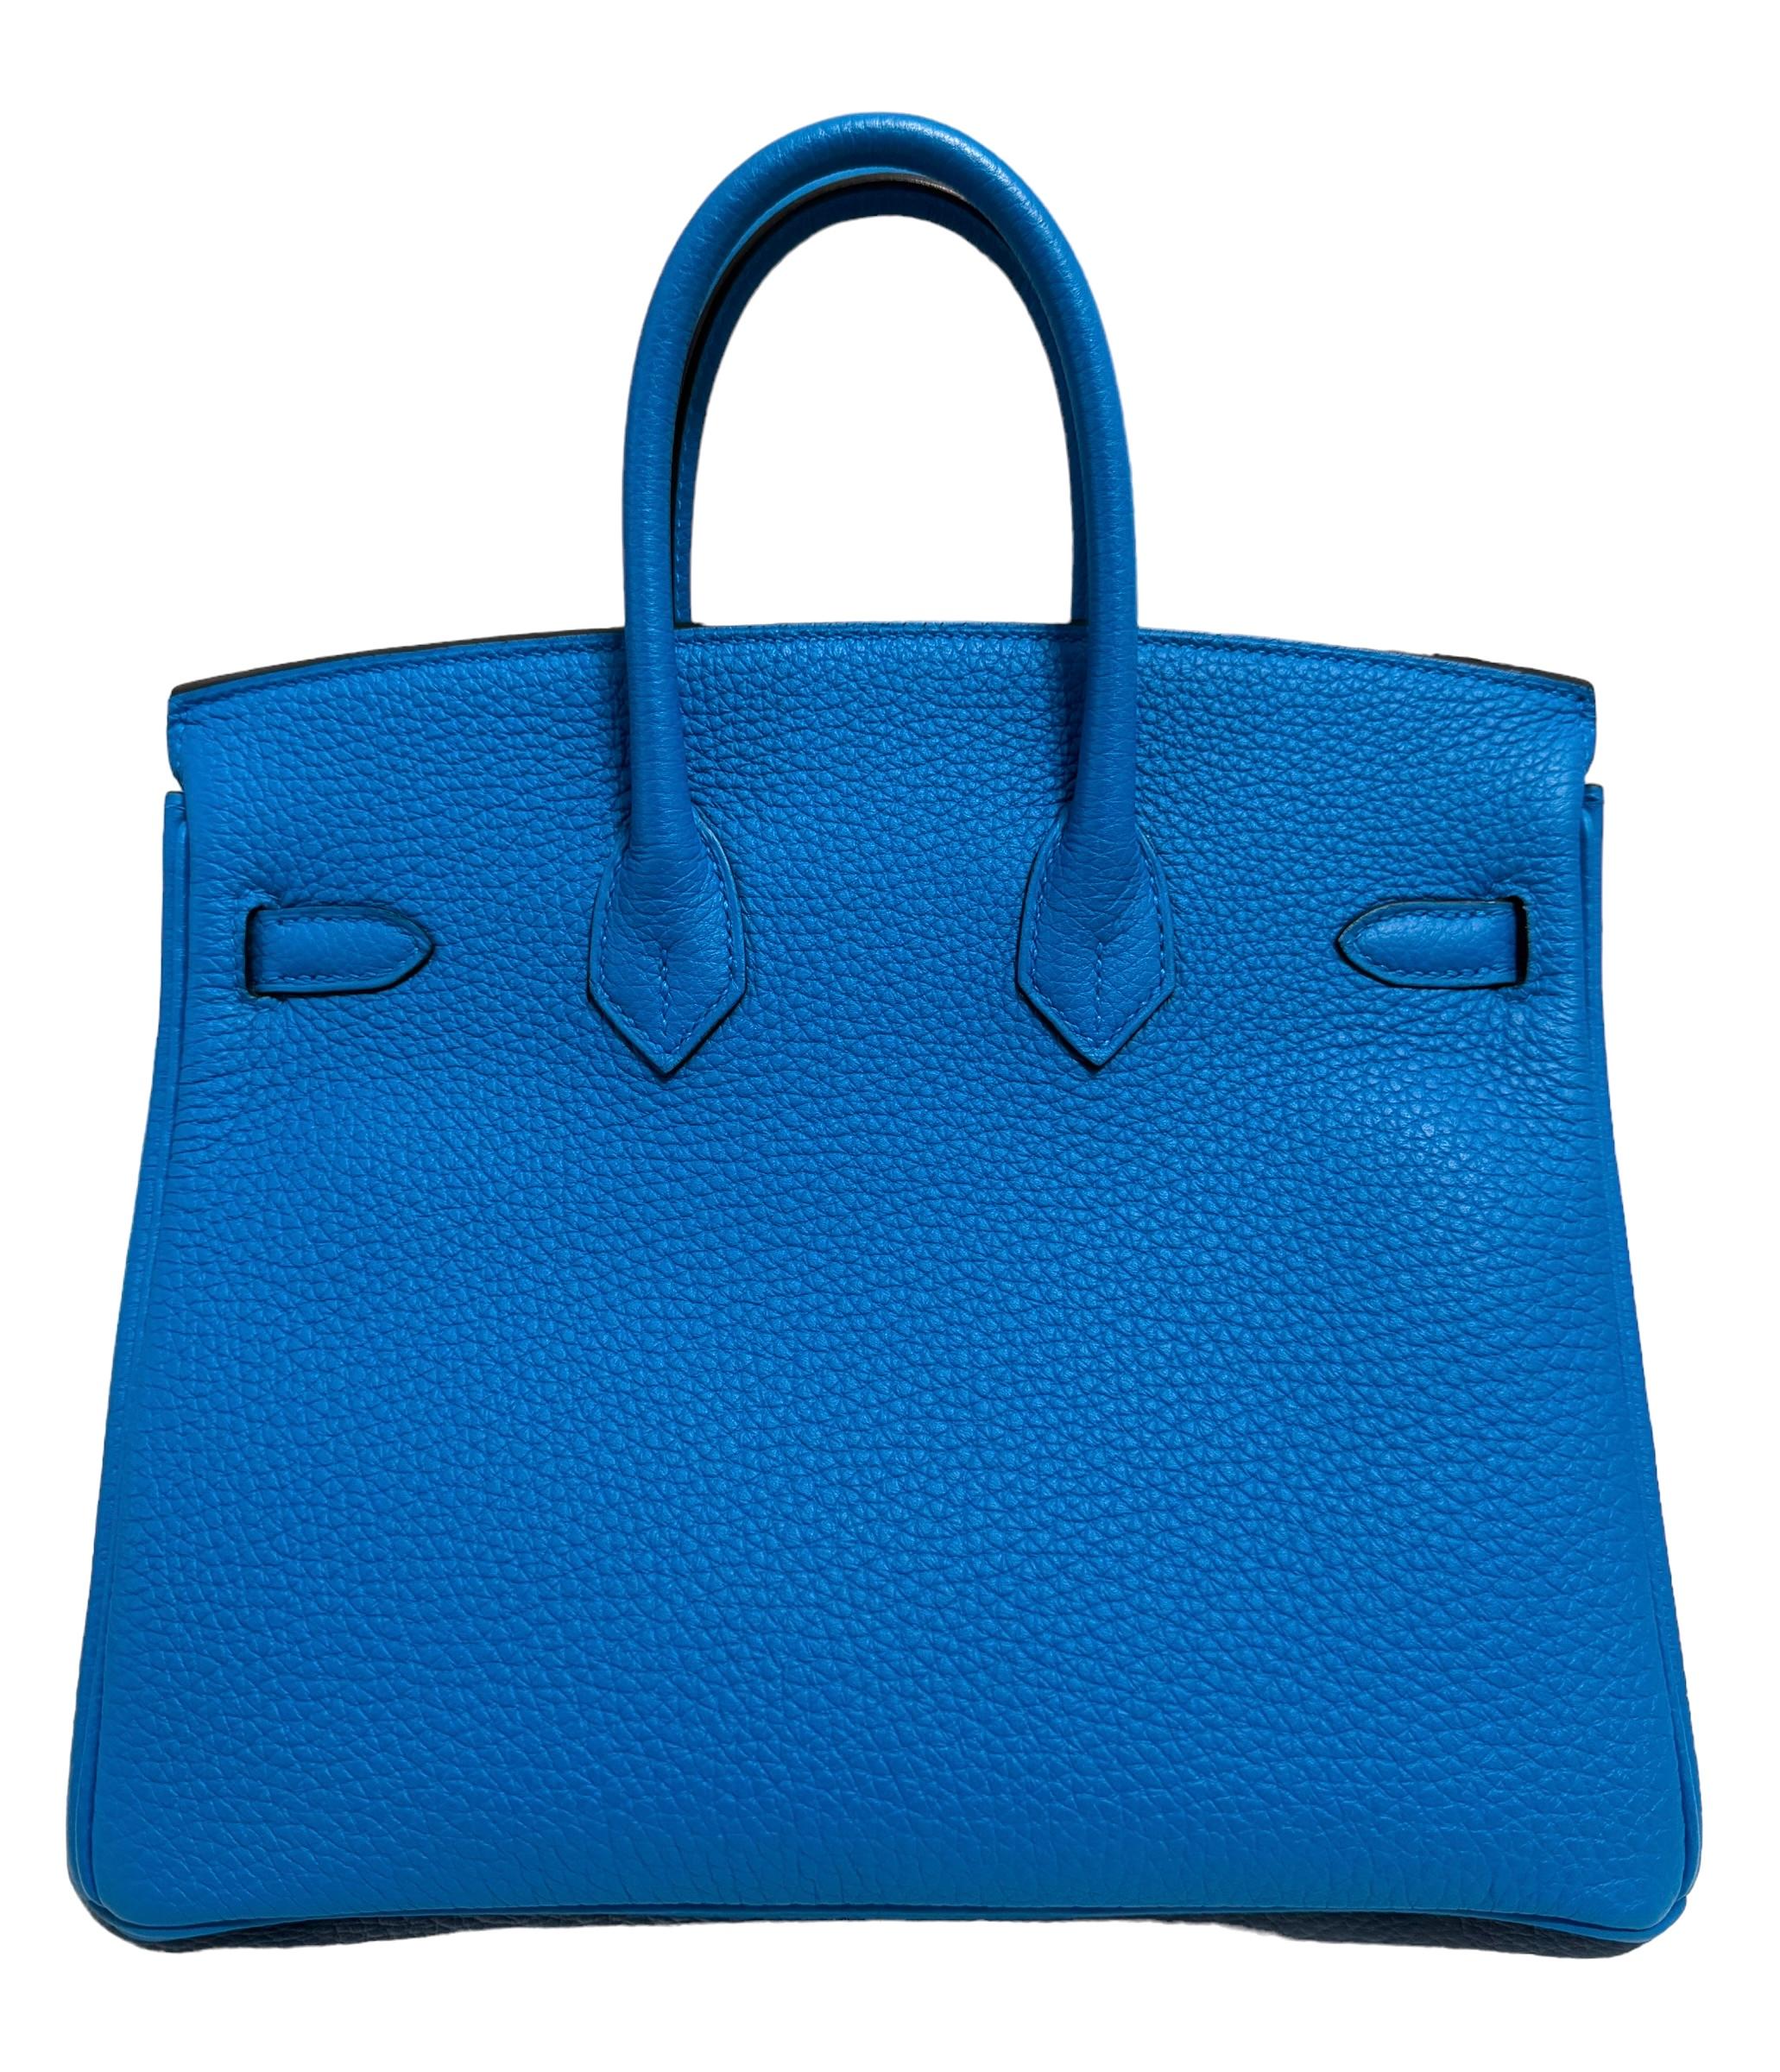 Hermes Birkin 25 Blue Bleu Zanzibar Togo Leather Handbag Palladium Hardware  In Excellent Condition For Sale In Miami, FL